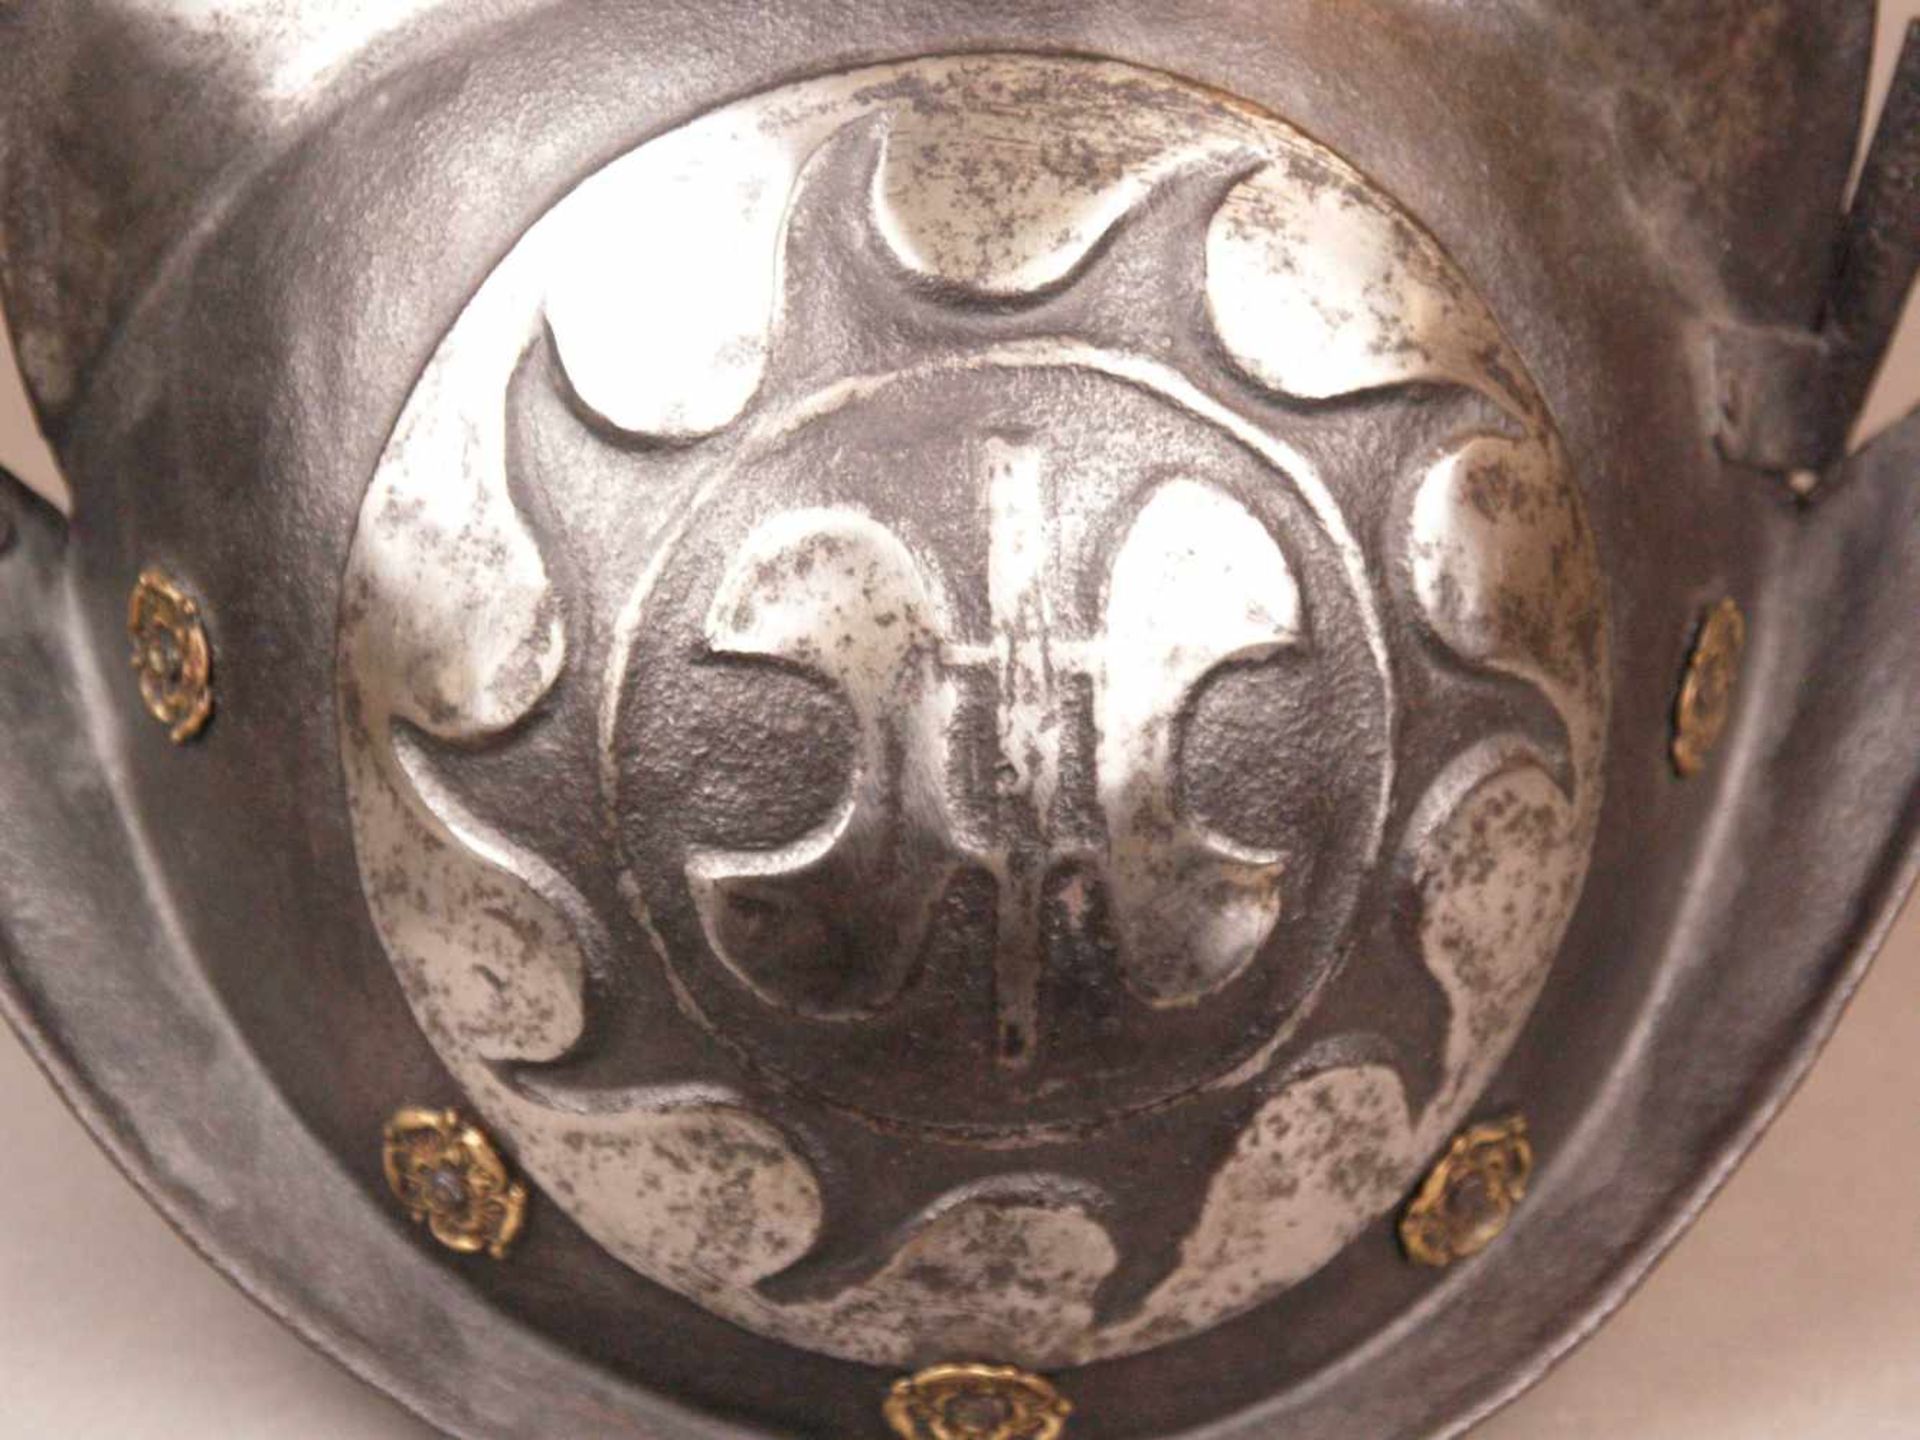 Schwarz-weißer Morion/Helm - süddeutsch, Ende 16.Jh./17.Jh., Eisen, teilweise geschwärzt, zweiteilig - Bild 4 aus 6